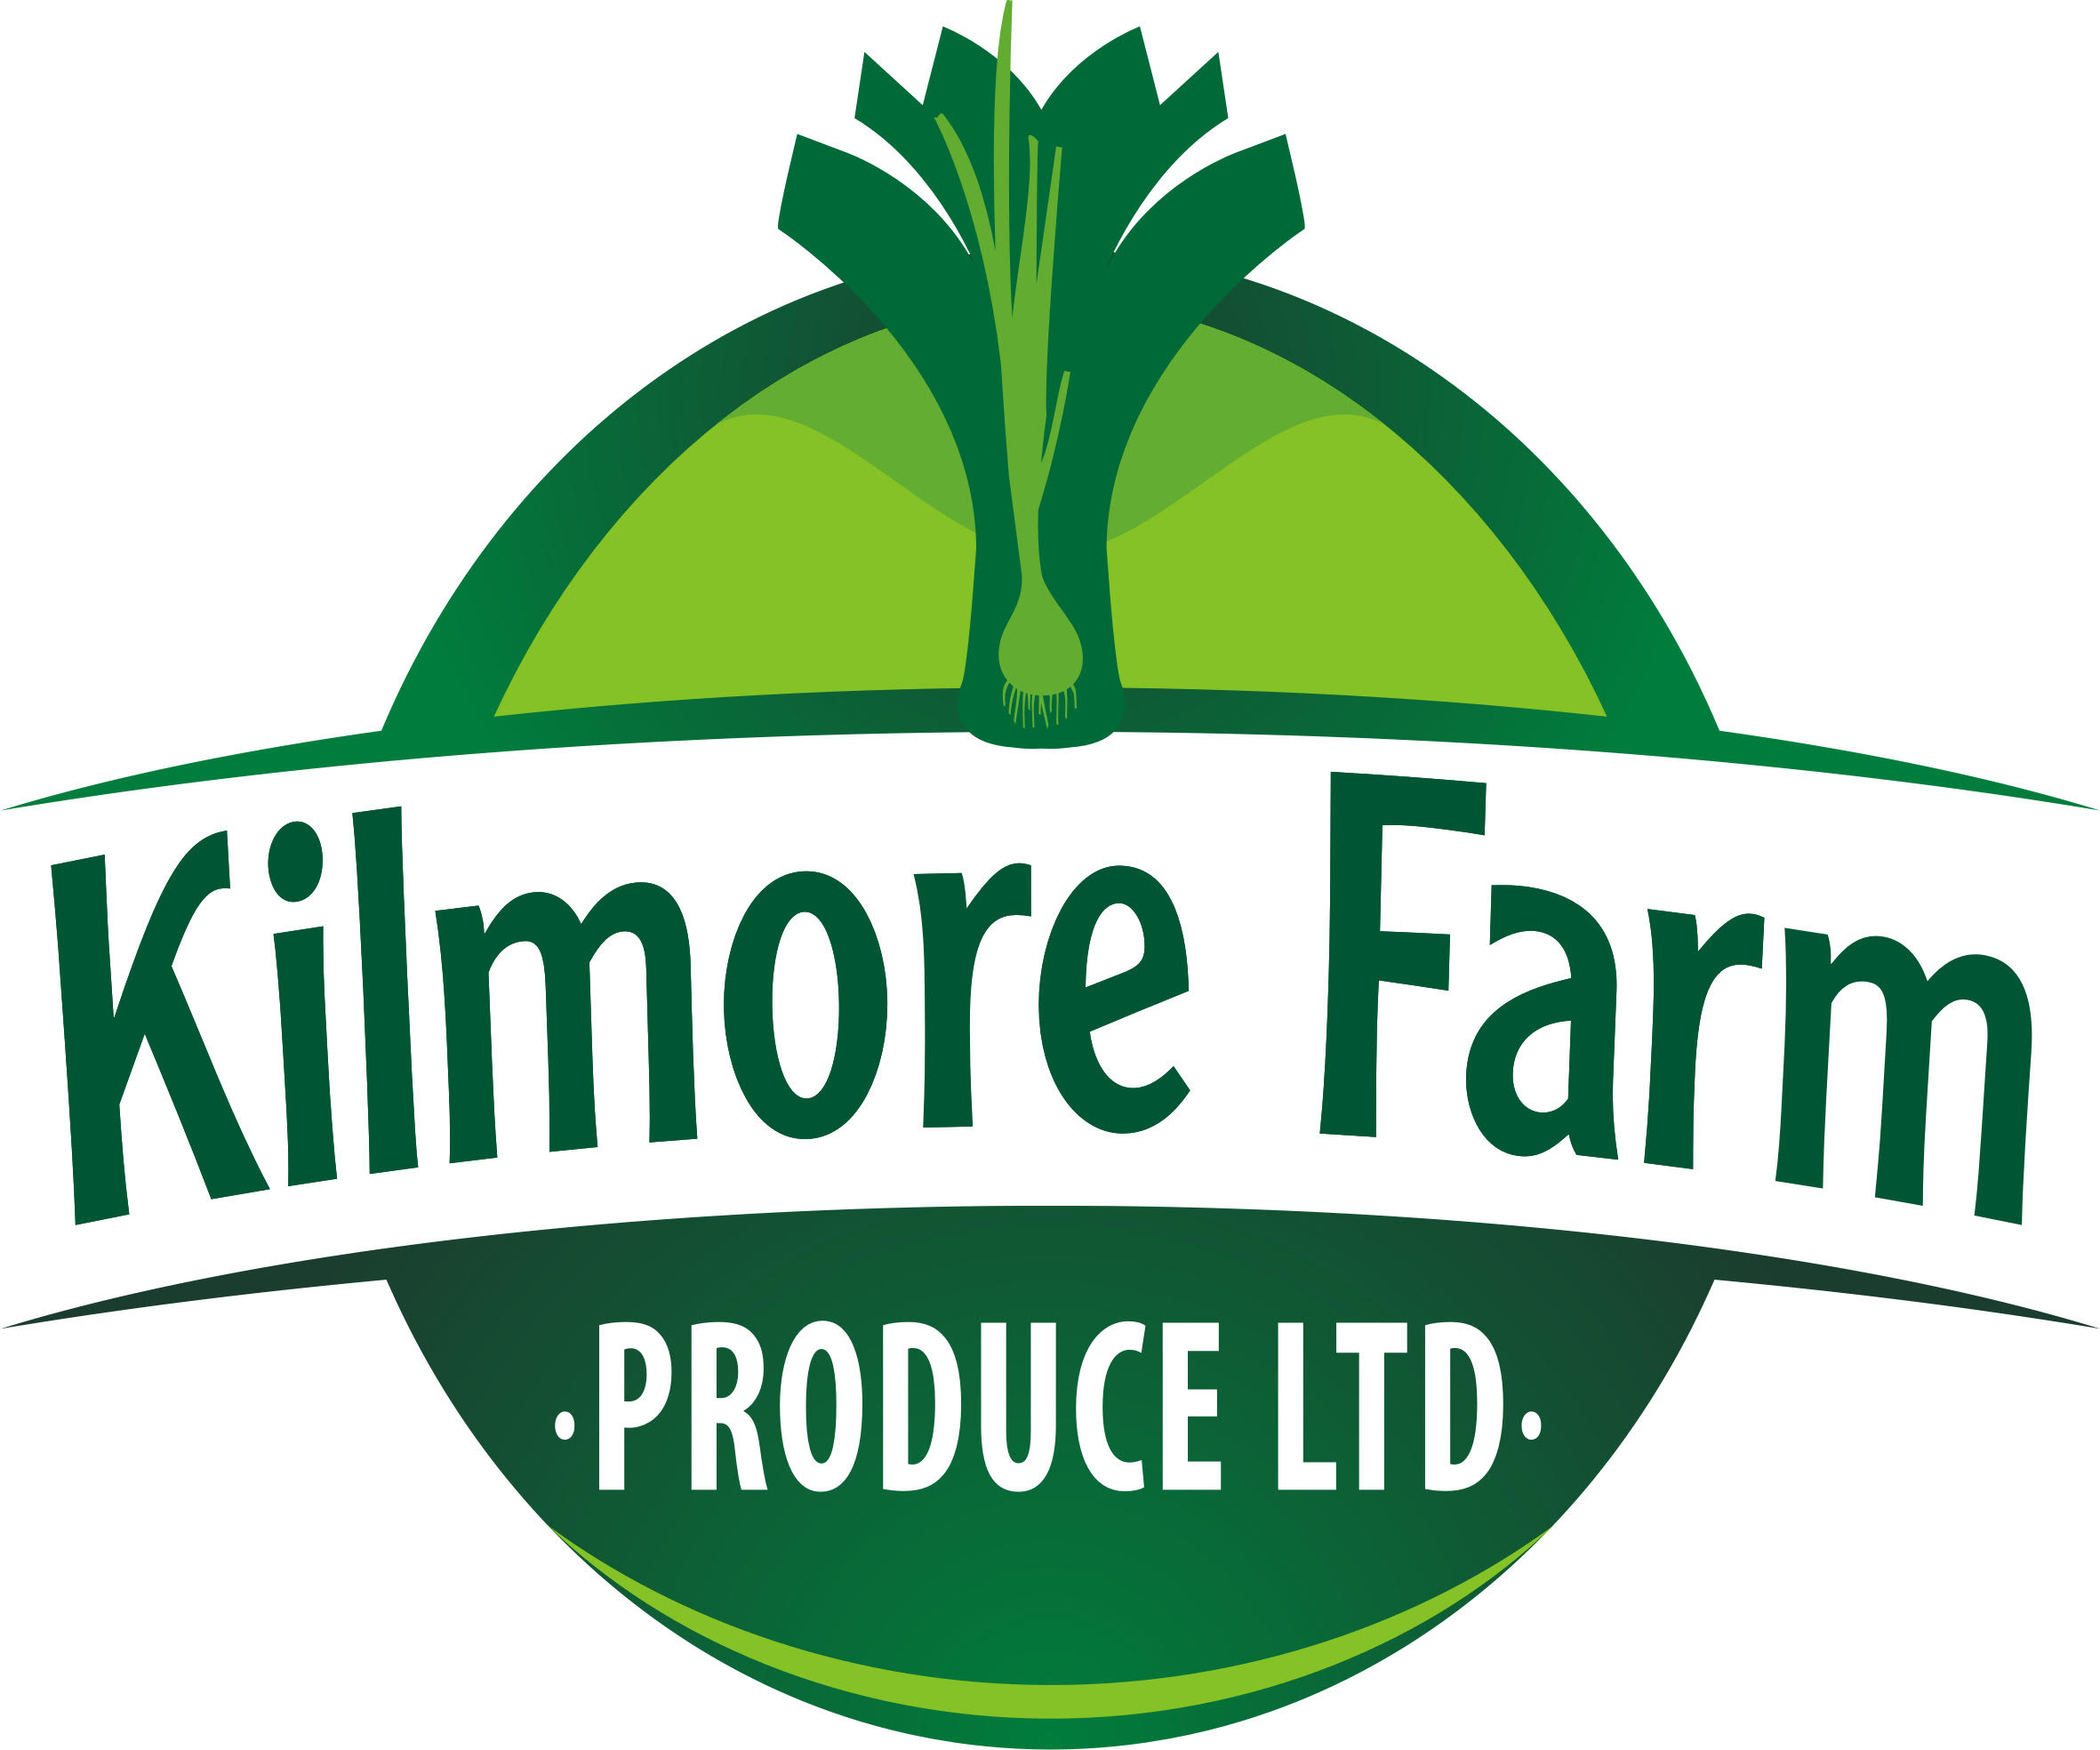 Kilmore Farm